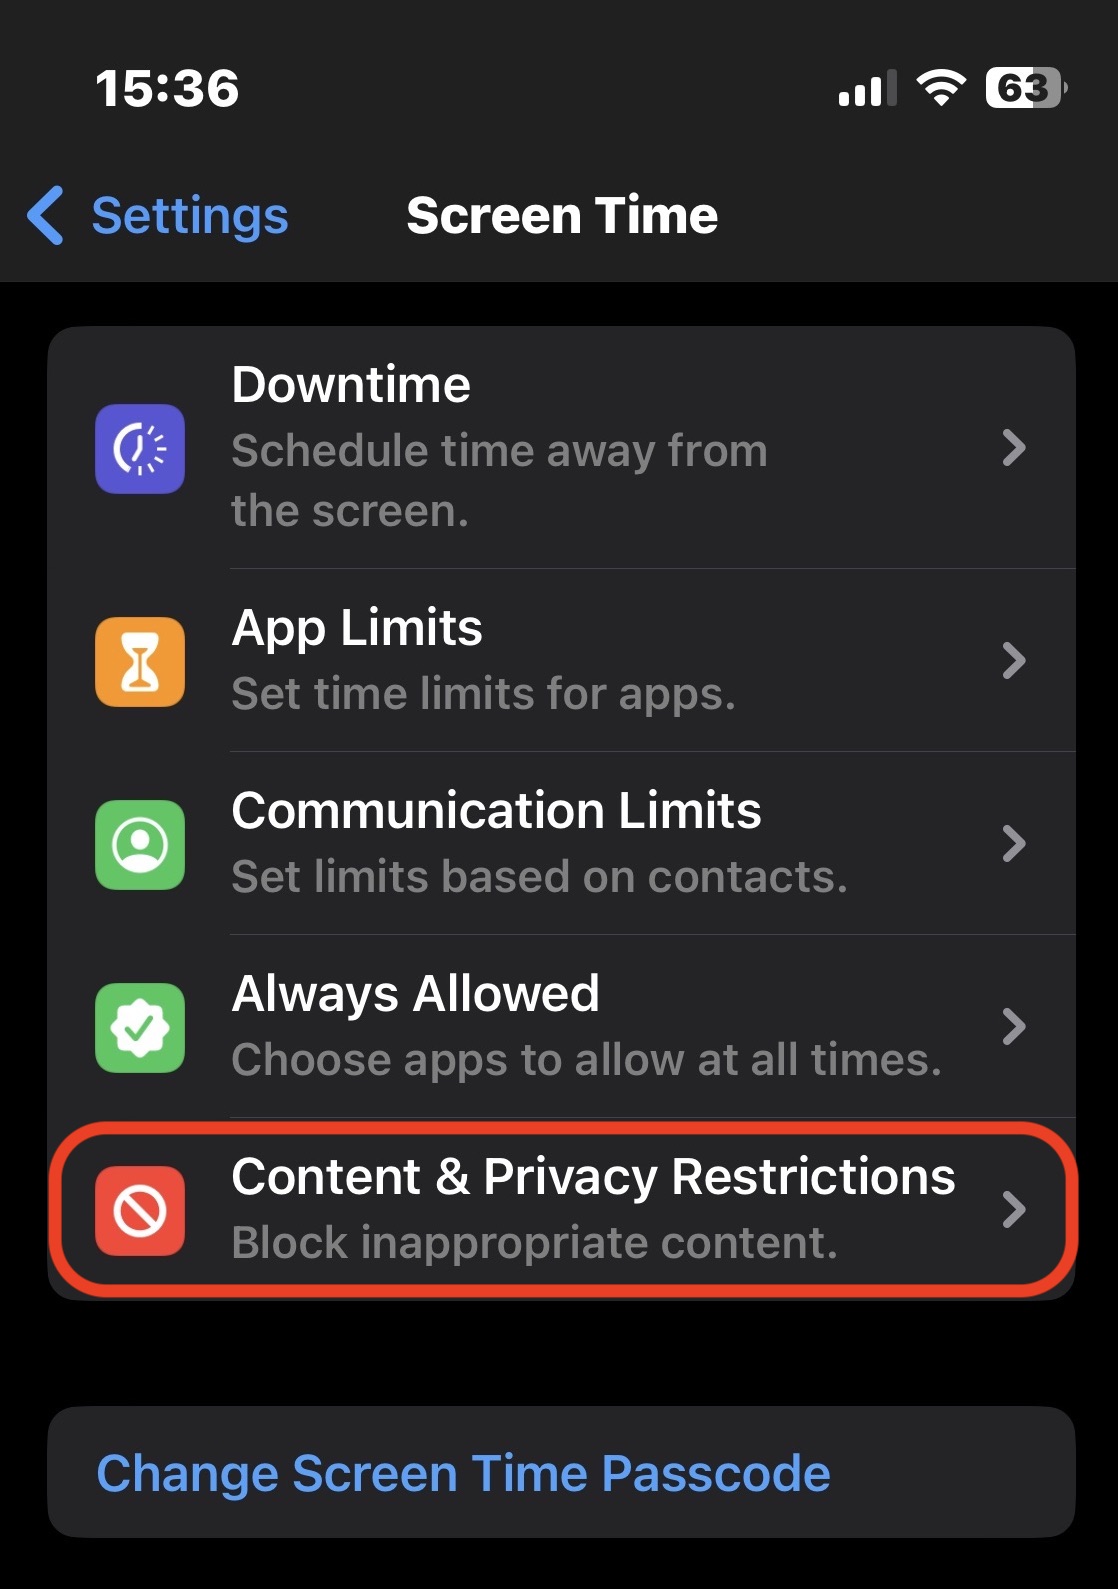 Restricciones de privacidad del contenido del iPhone Controles parentales